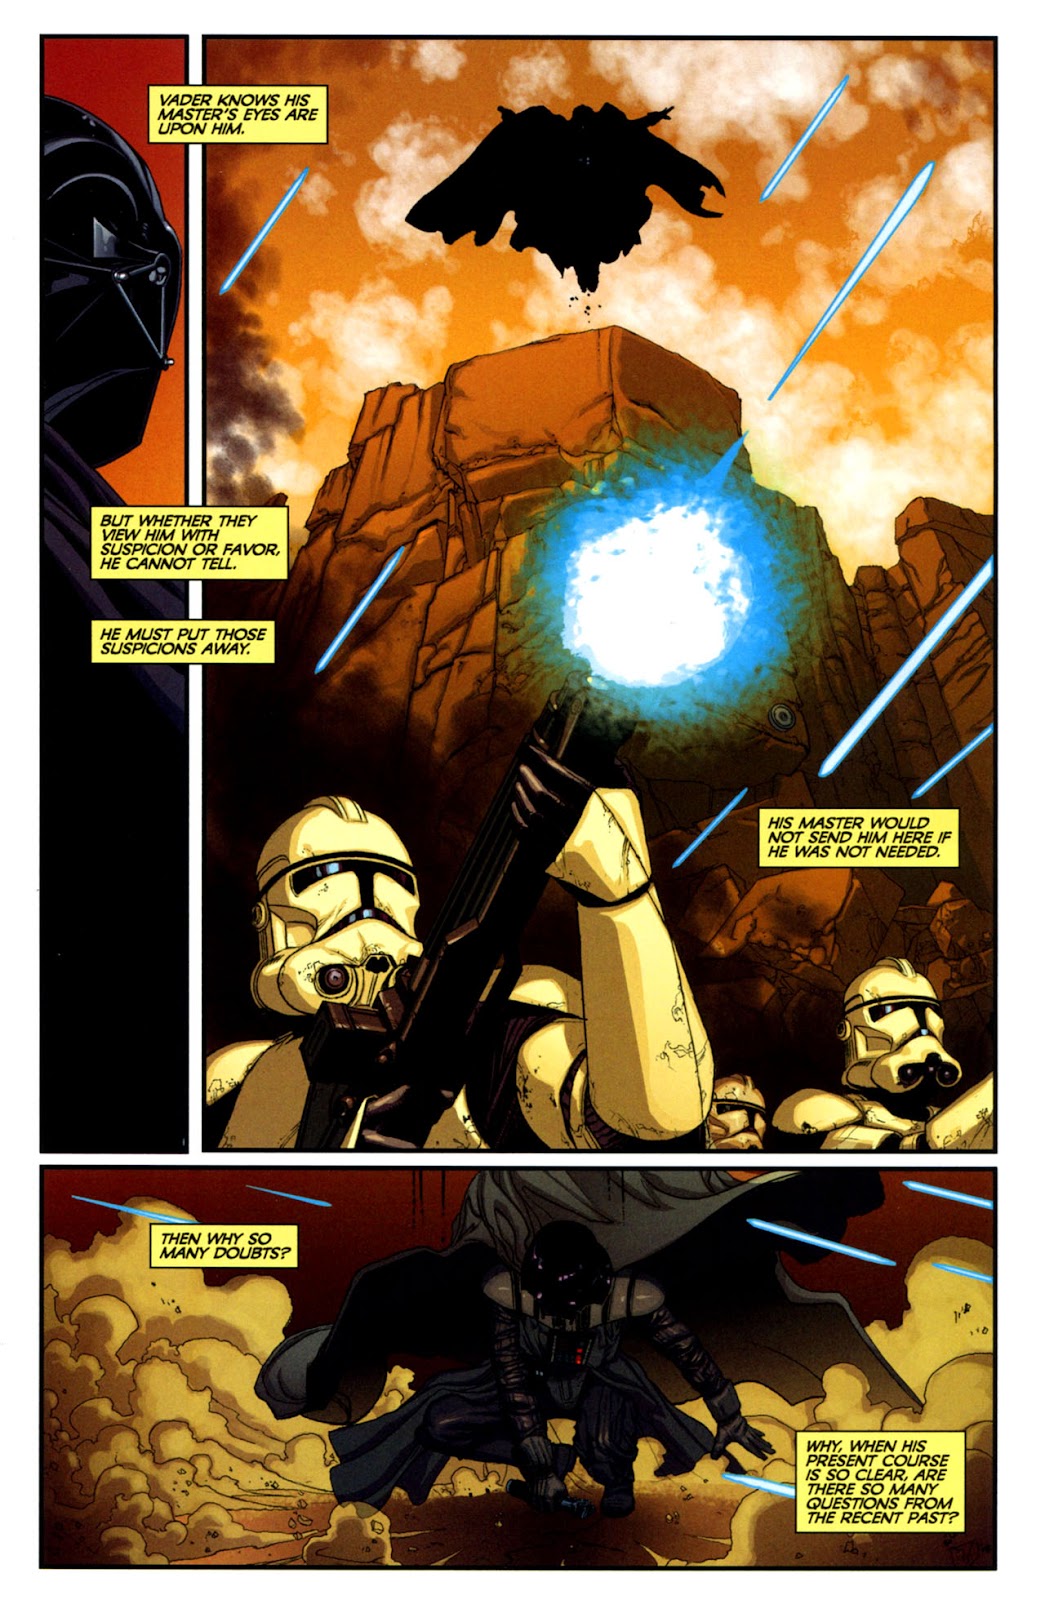 Star Wars: Dark Times issue 14 - Blue Harvest, Part 2 - Page 4